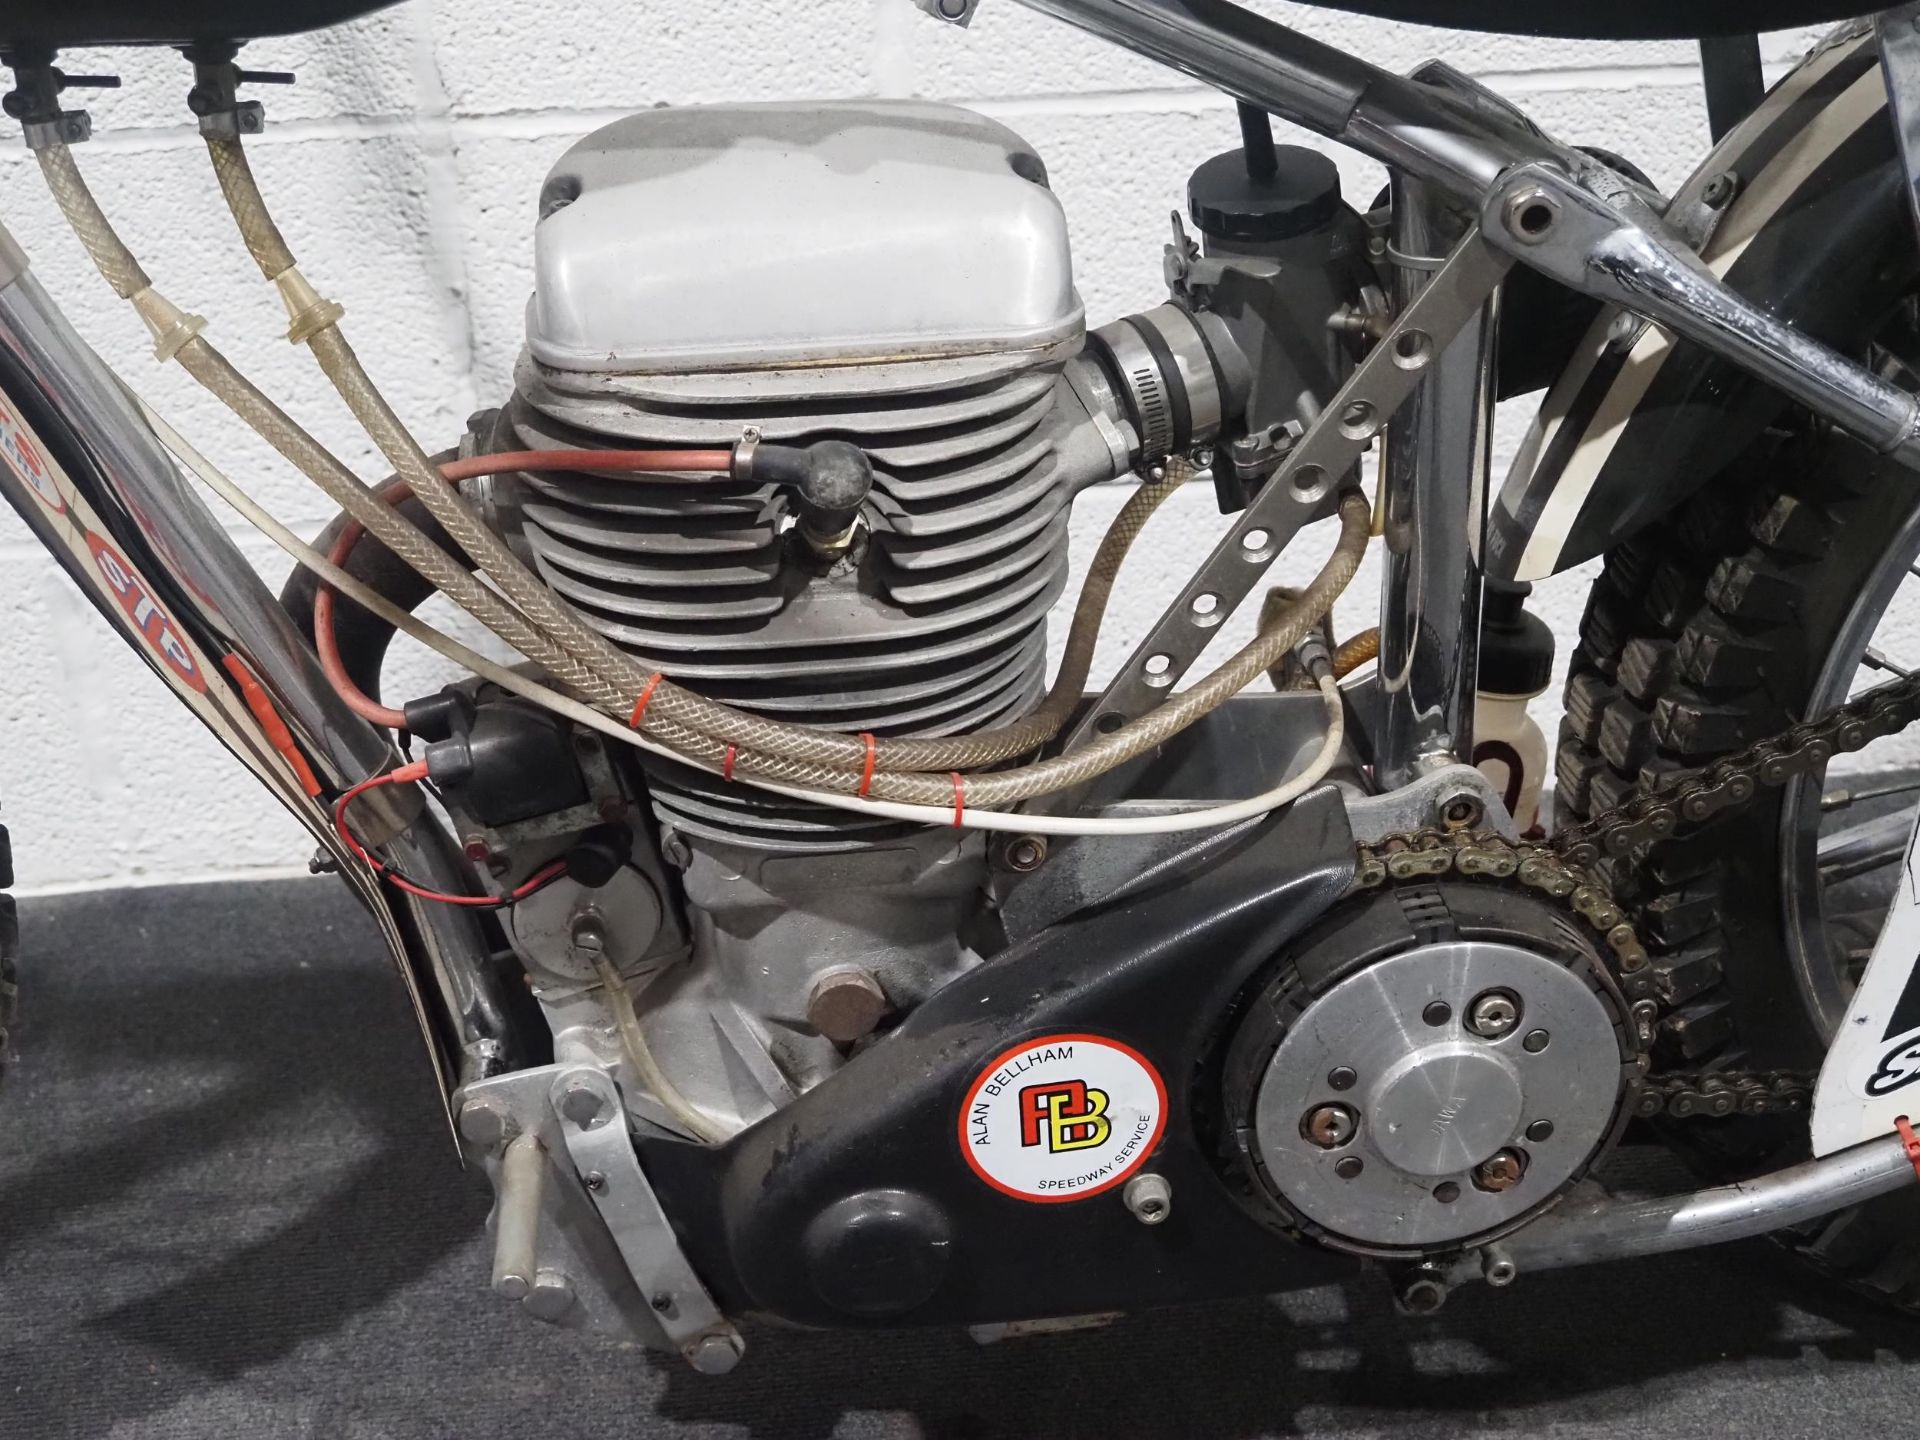 Jawa Speedway motorcycle Engine No. 13132 - Image 6 of 6